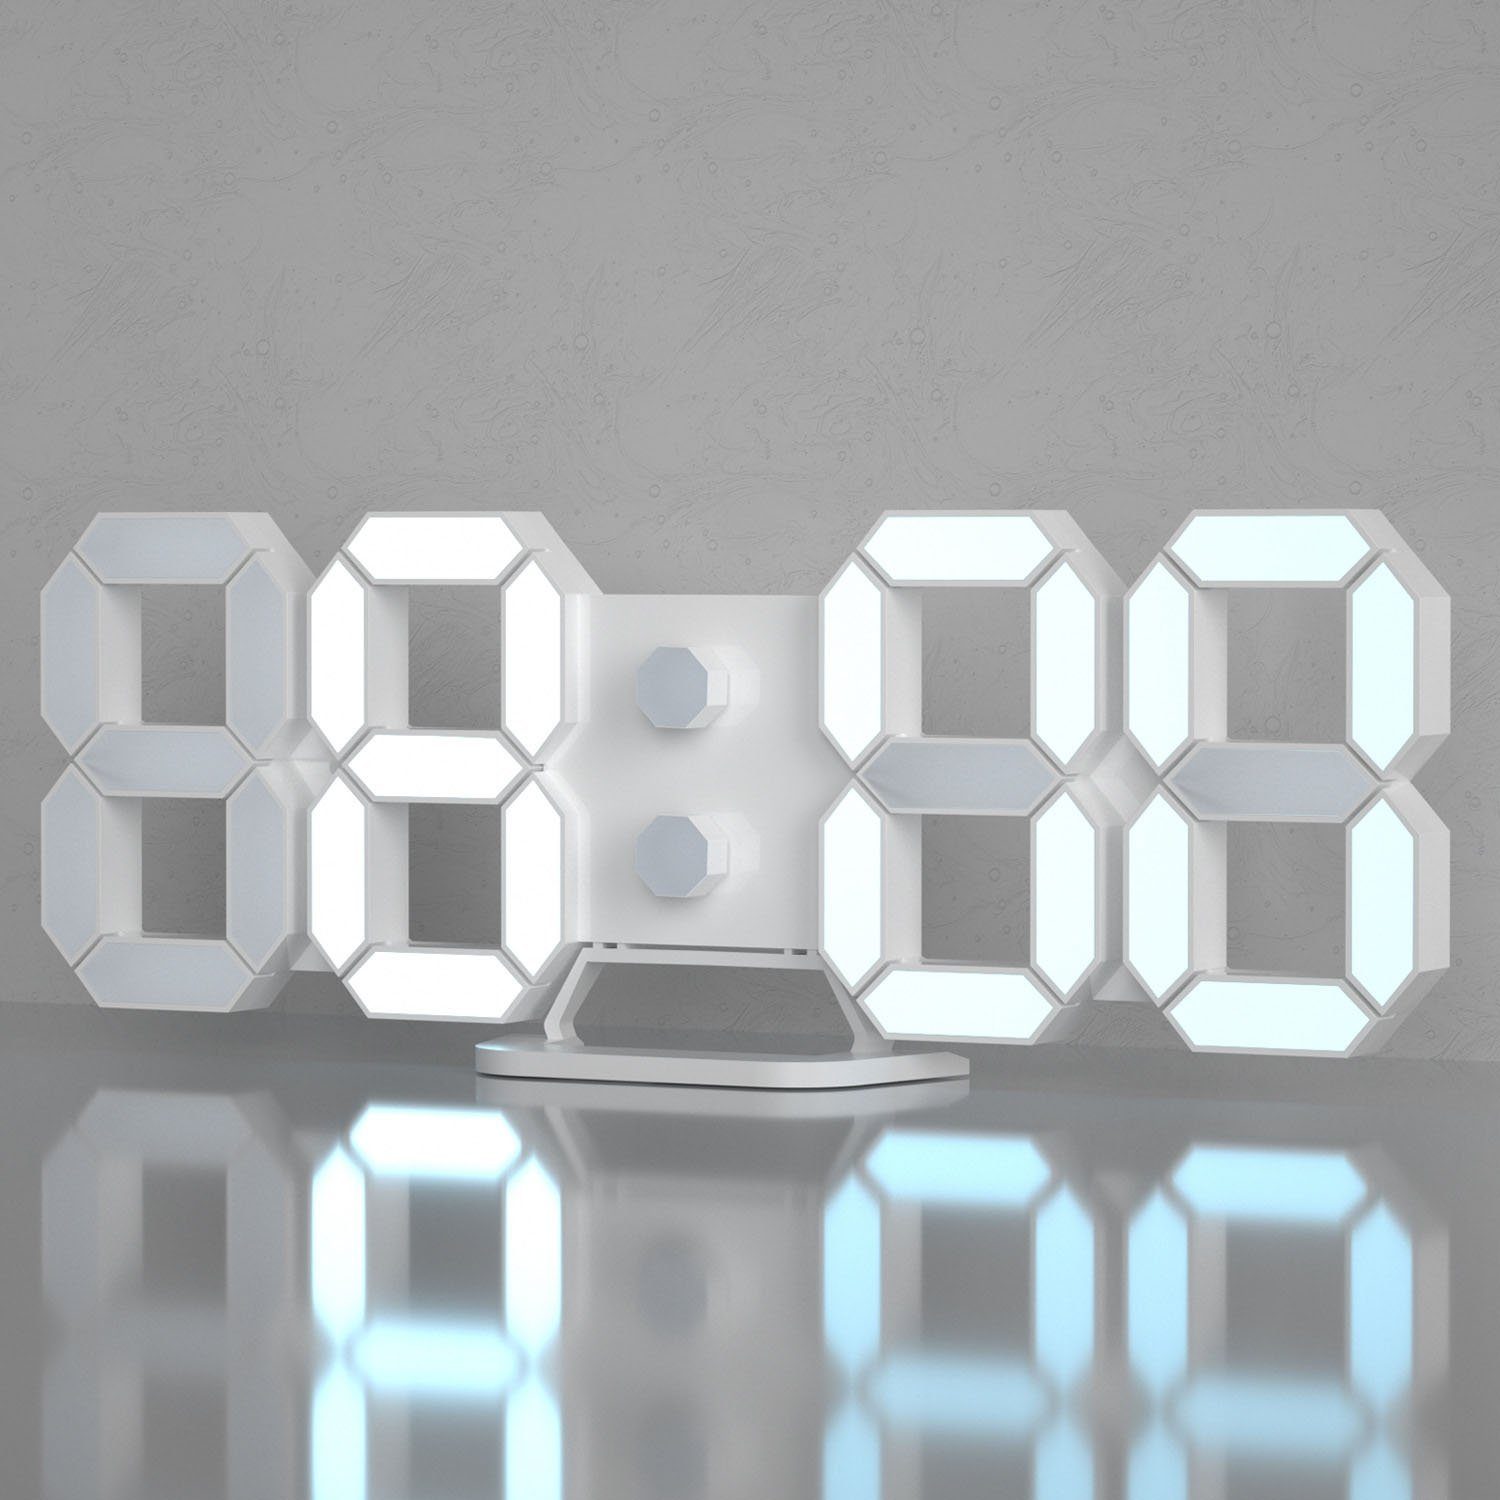 zggzerg Wanduhr »3D Wecker Uhr Led Wanduhr Digital dimmbar geräuschlos  Snooze«